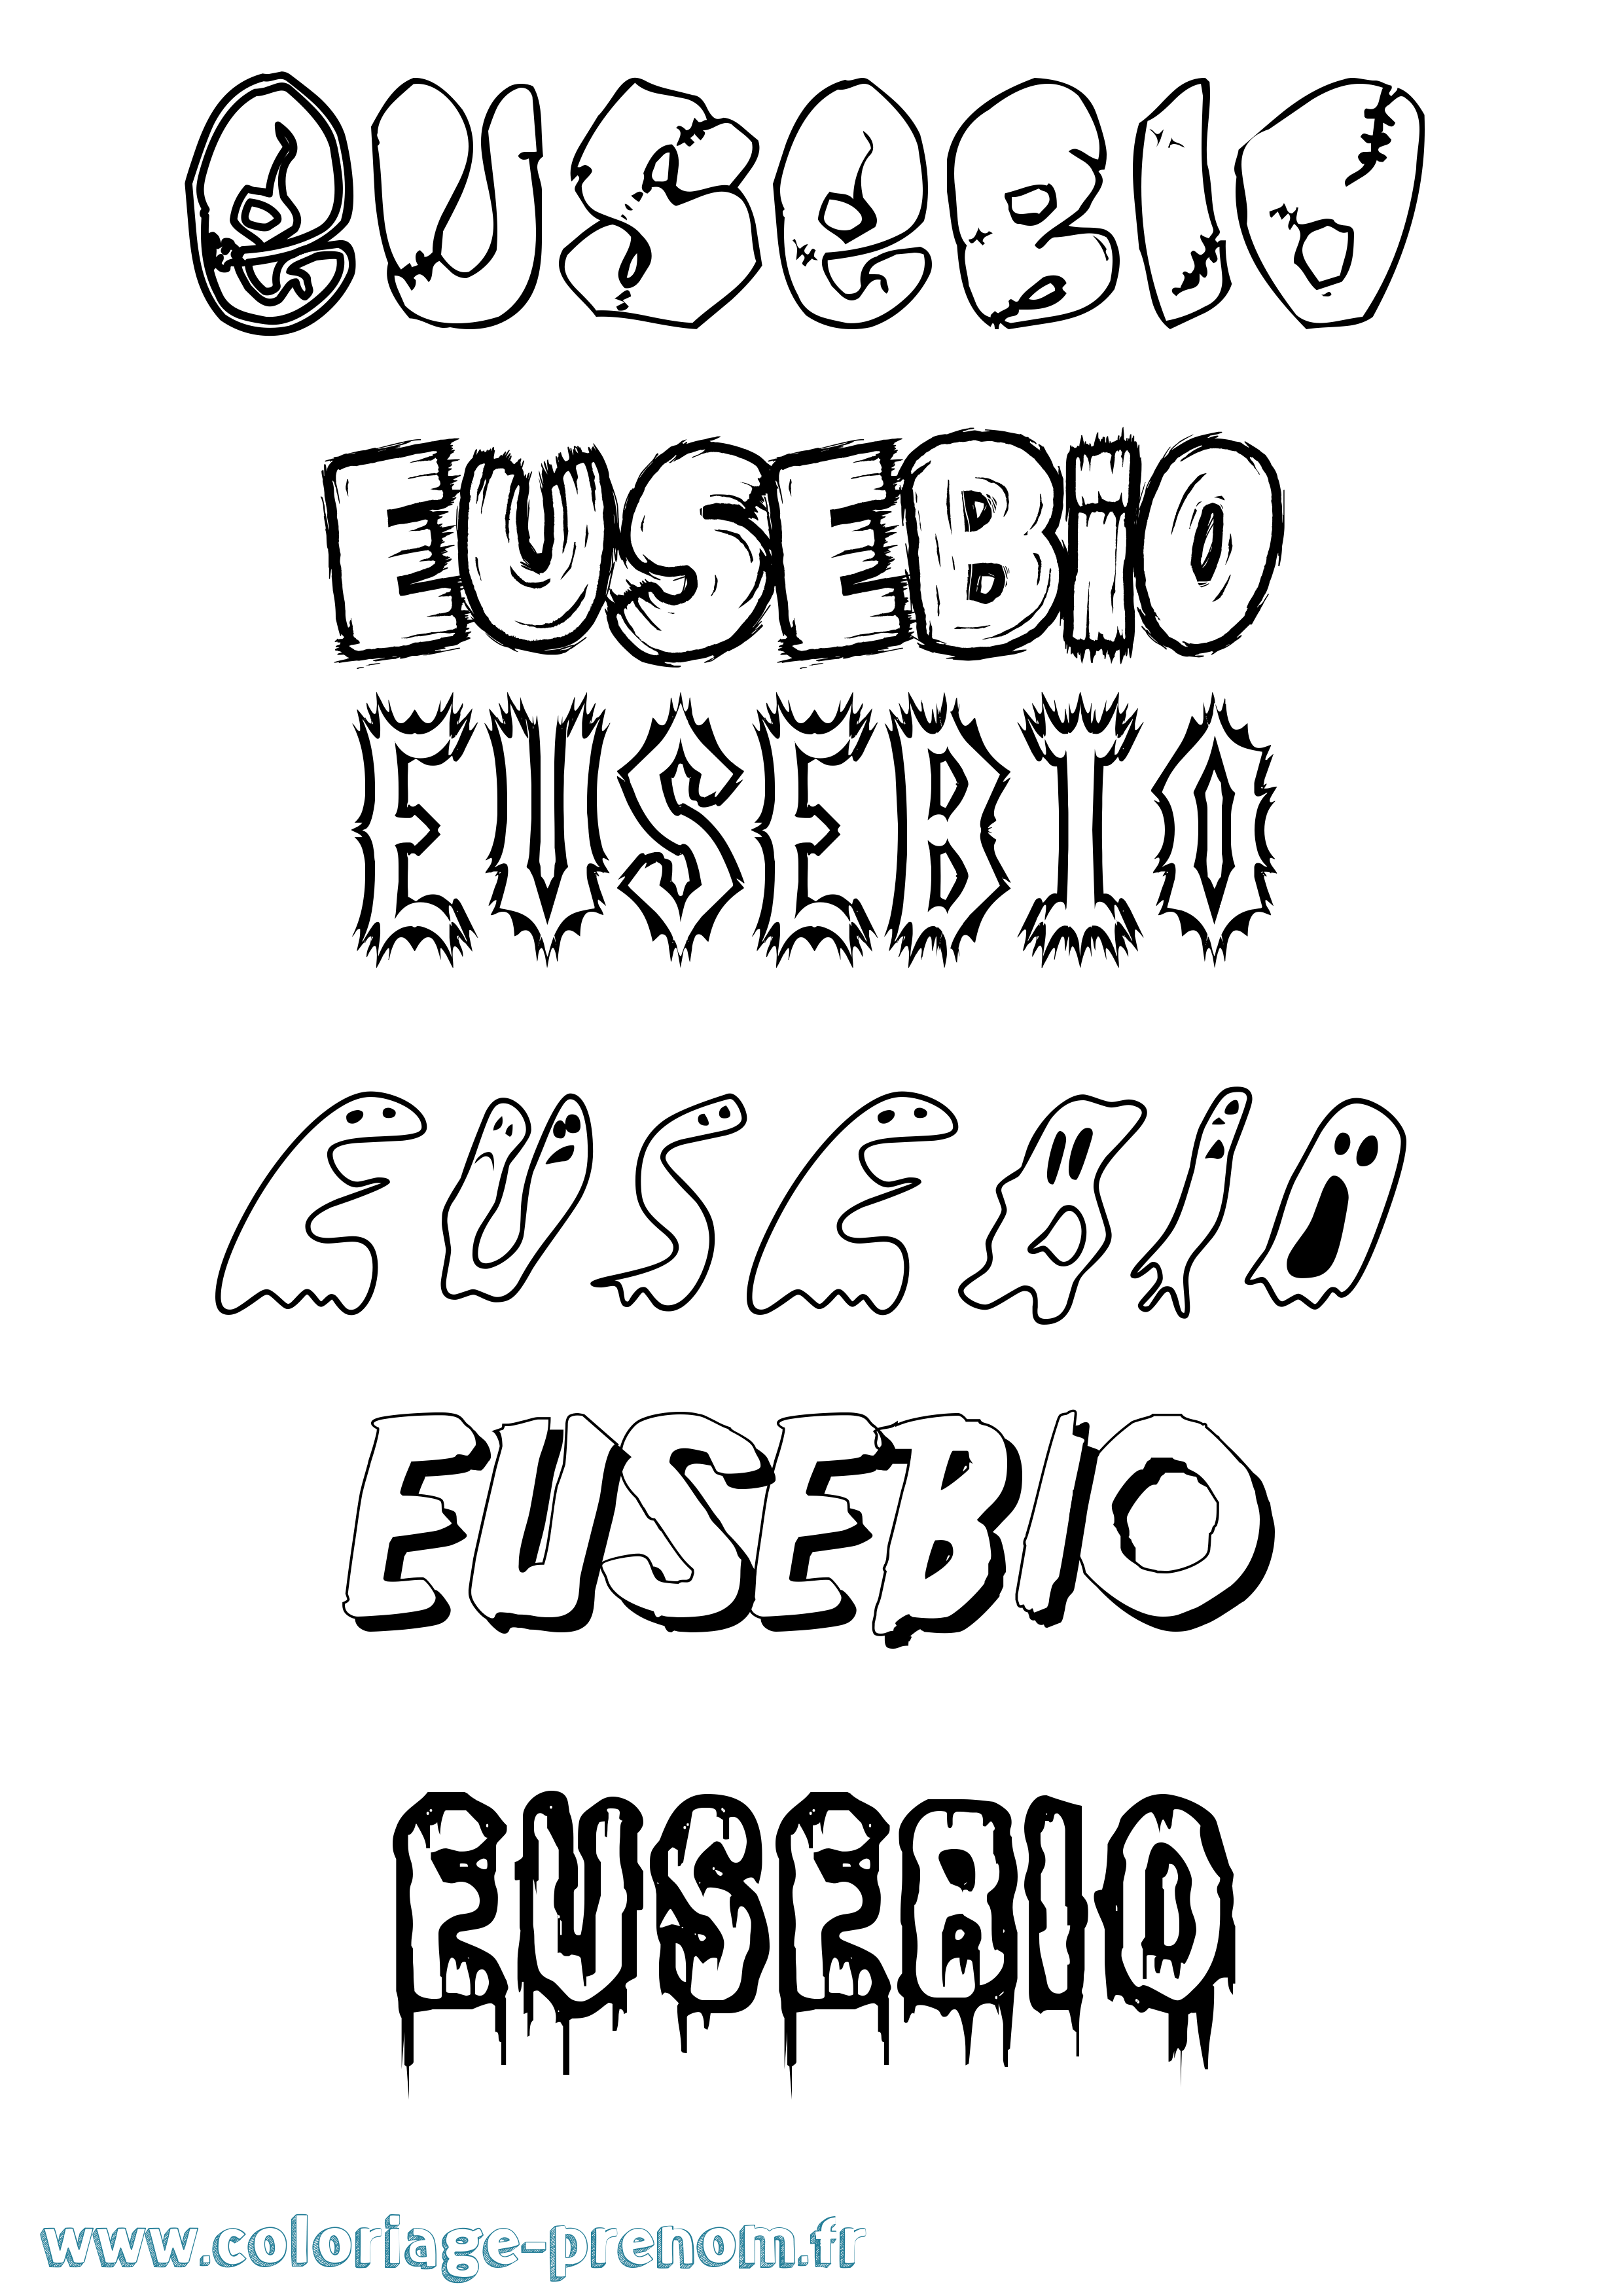 Coloriage prénom Eusebio Frisson